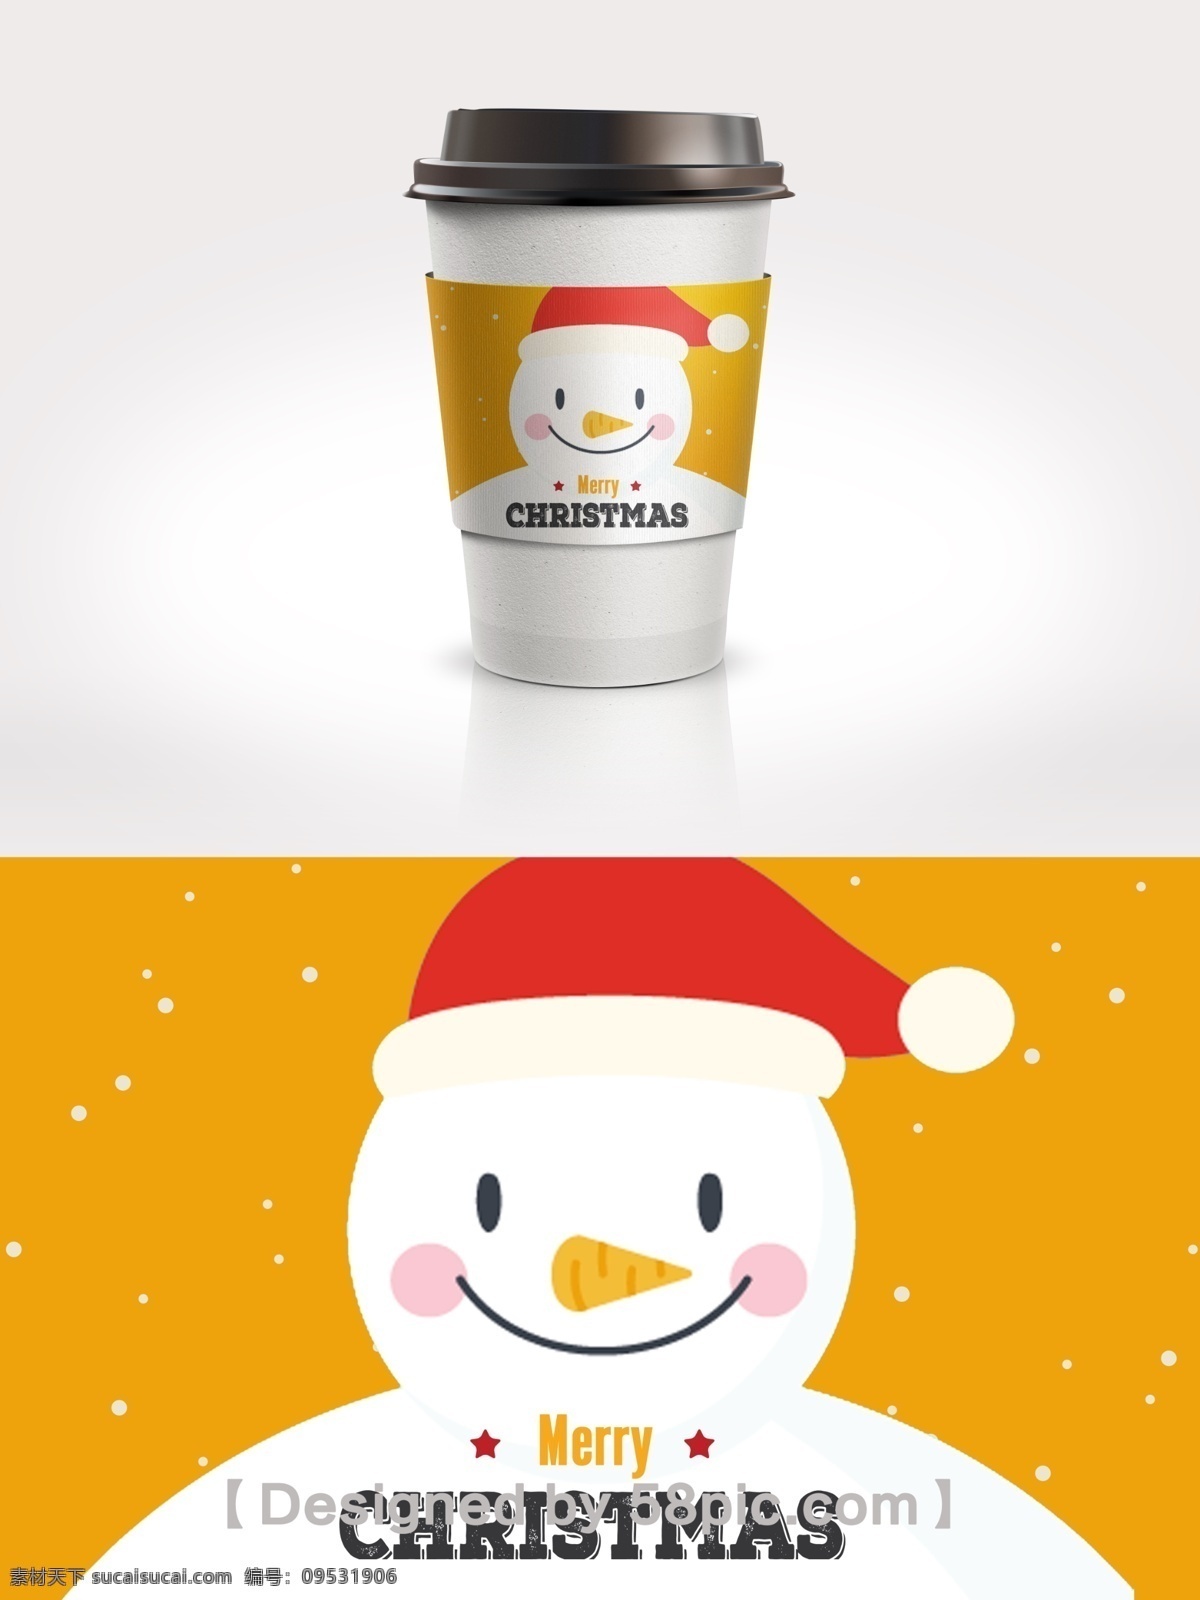 黄色 圣诞 雪人 节日 咖啡杯 套 psd素材 广告设计模版 简约大气 节日包装设计 咖啡杯套 圣诞雪人 圣诞元素